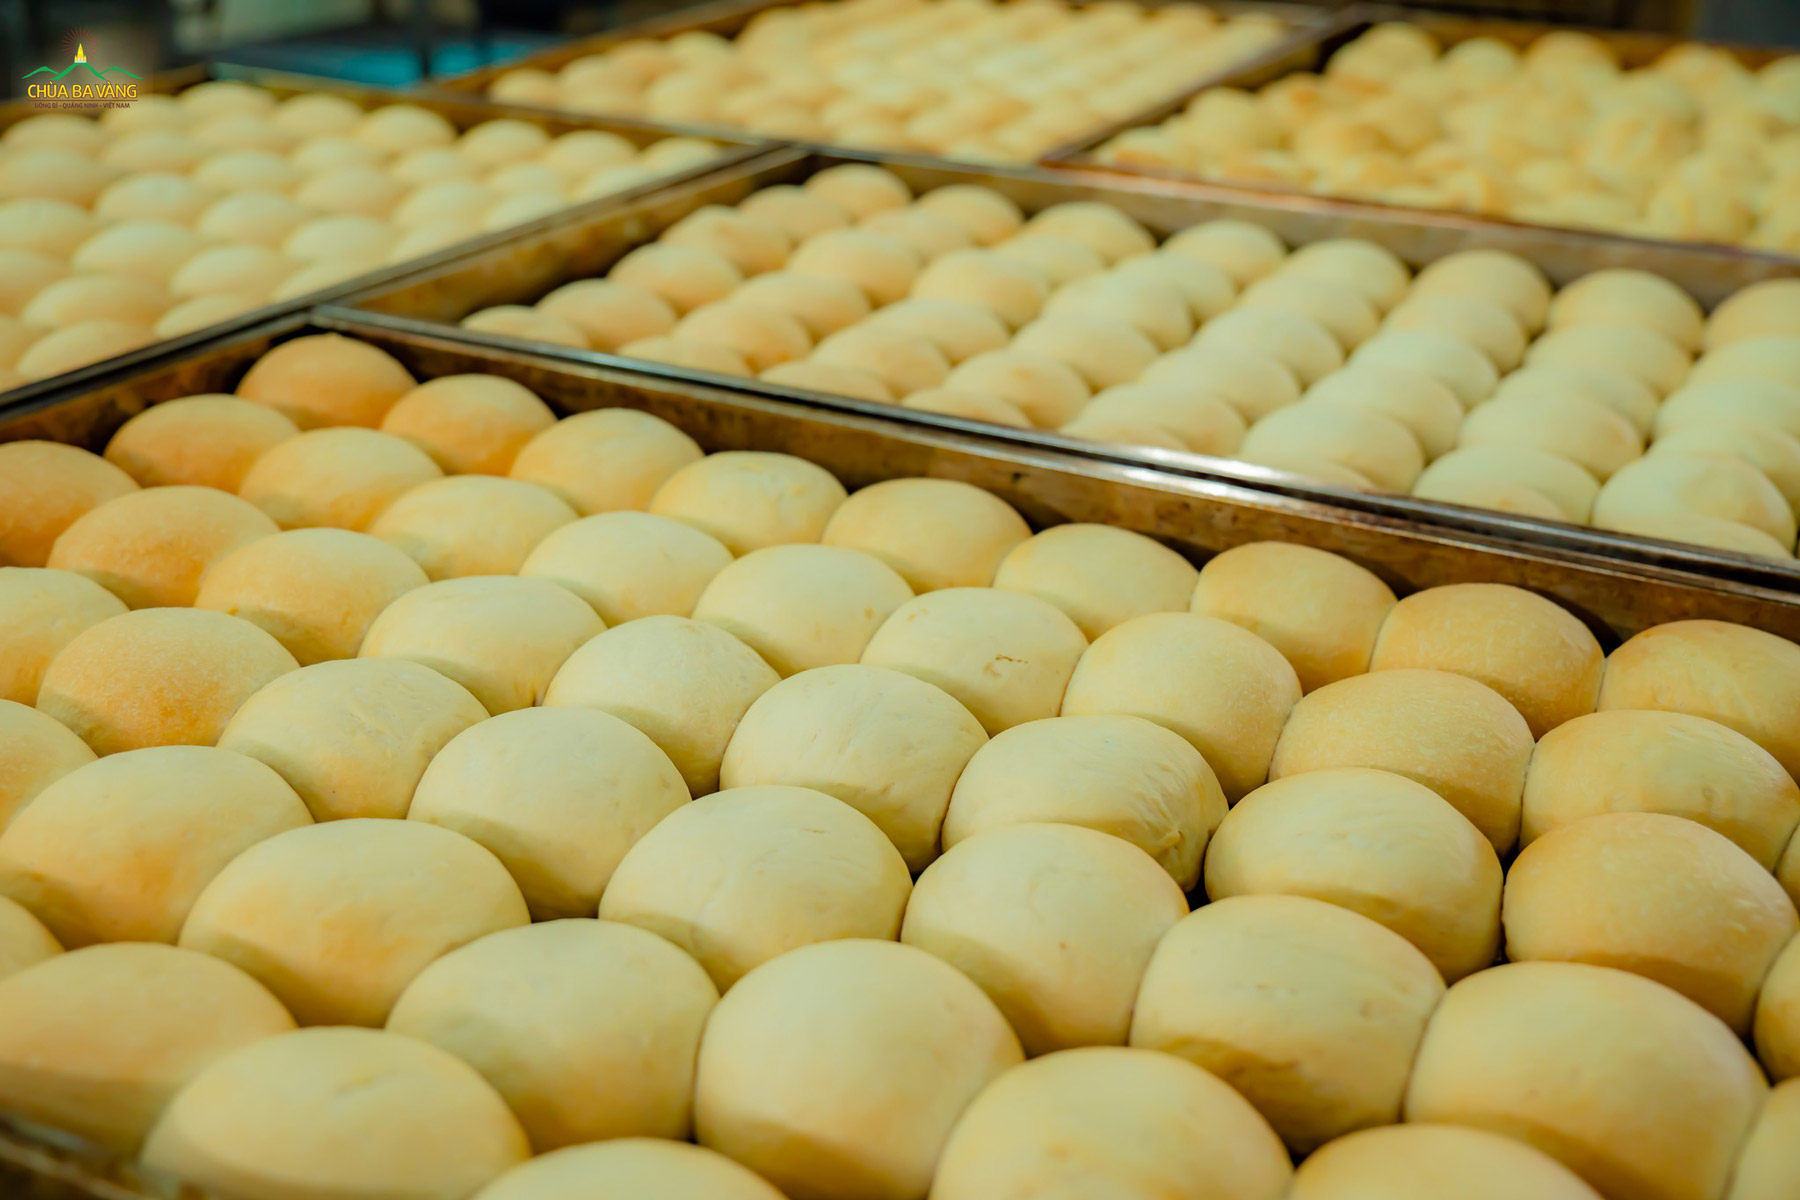 Những chiếc bánh được tạo nên từ đôi bàn tay khéo léo của các Phật tử trông thật đẹp mắt và hấp dẫn